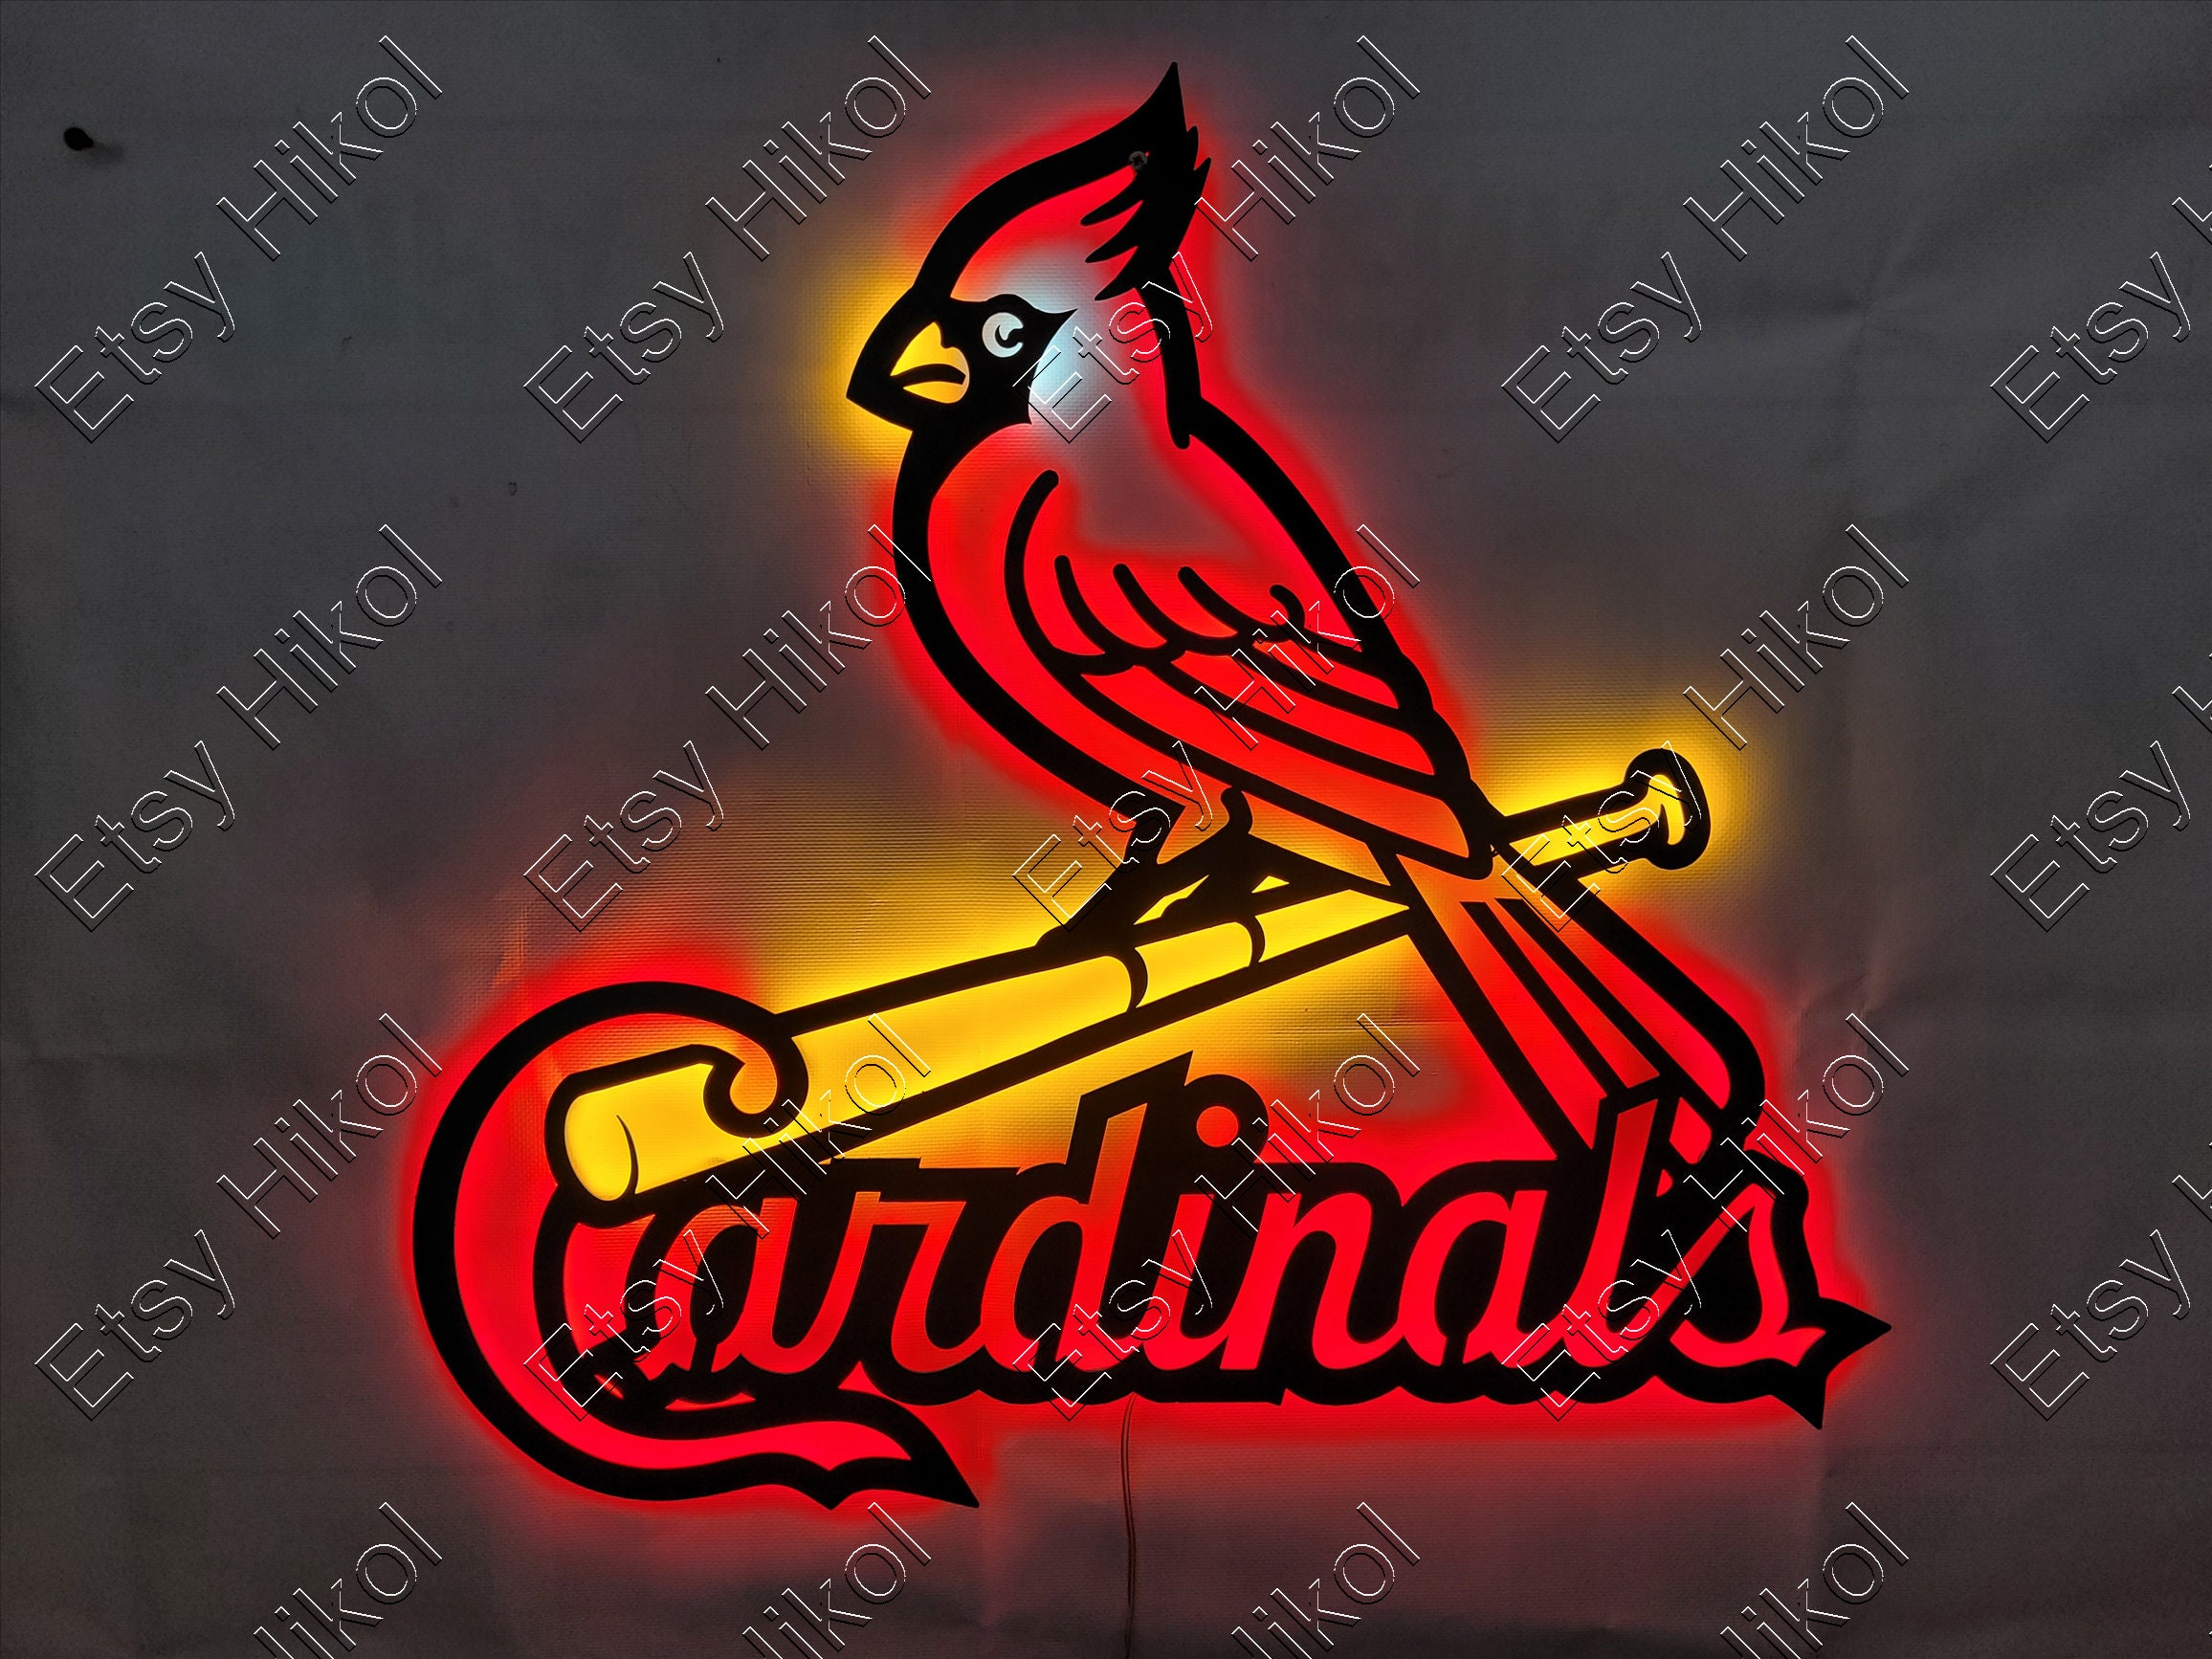 Saint St. Louis Cardinals Beer 17"x14" Neon Lamp Sign Light Bar  Wall Decor Glass